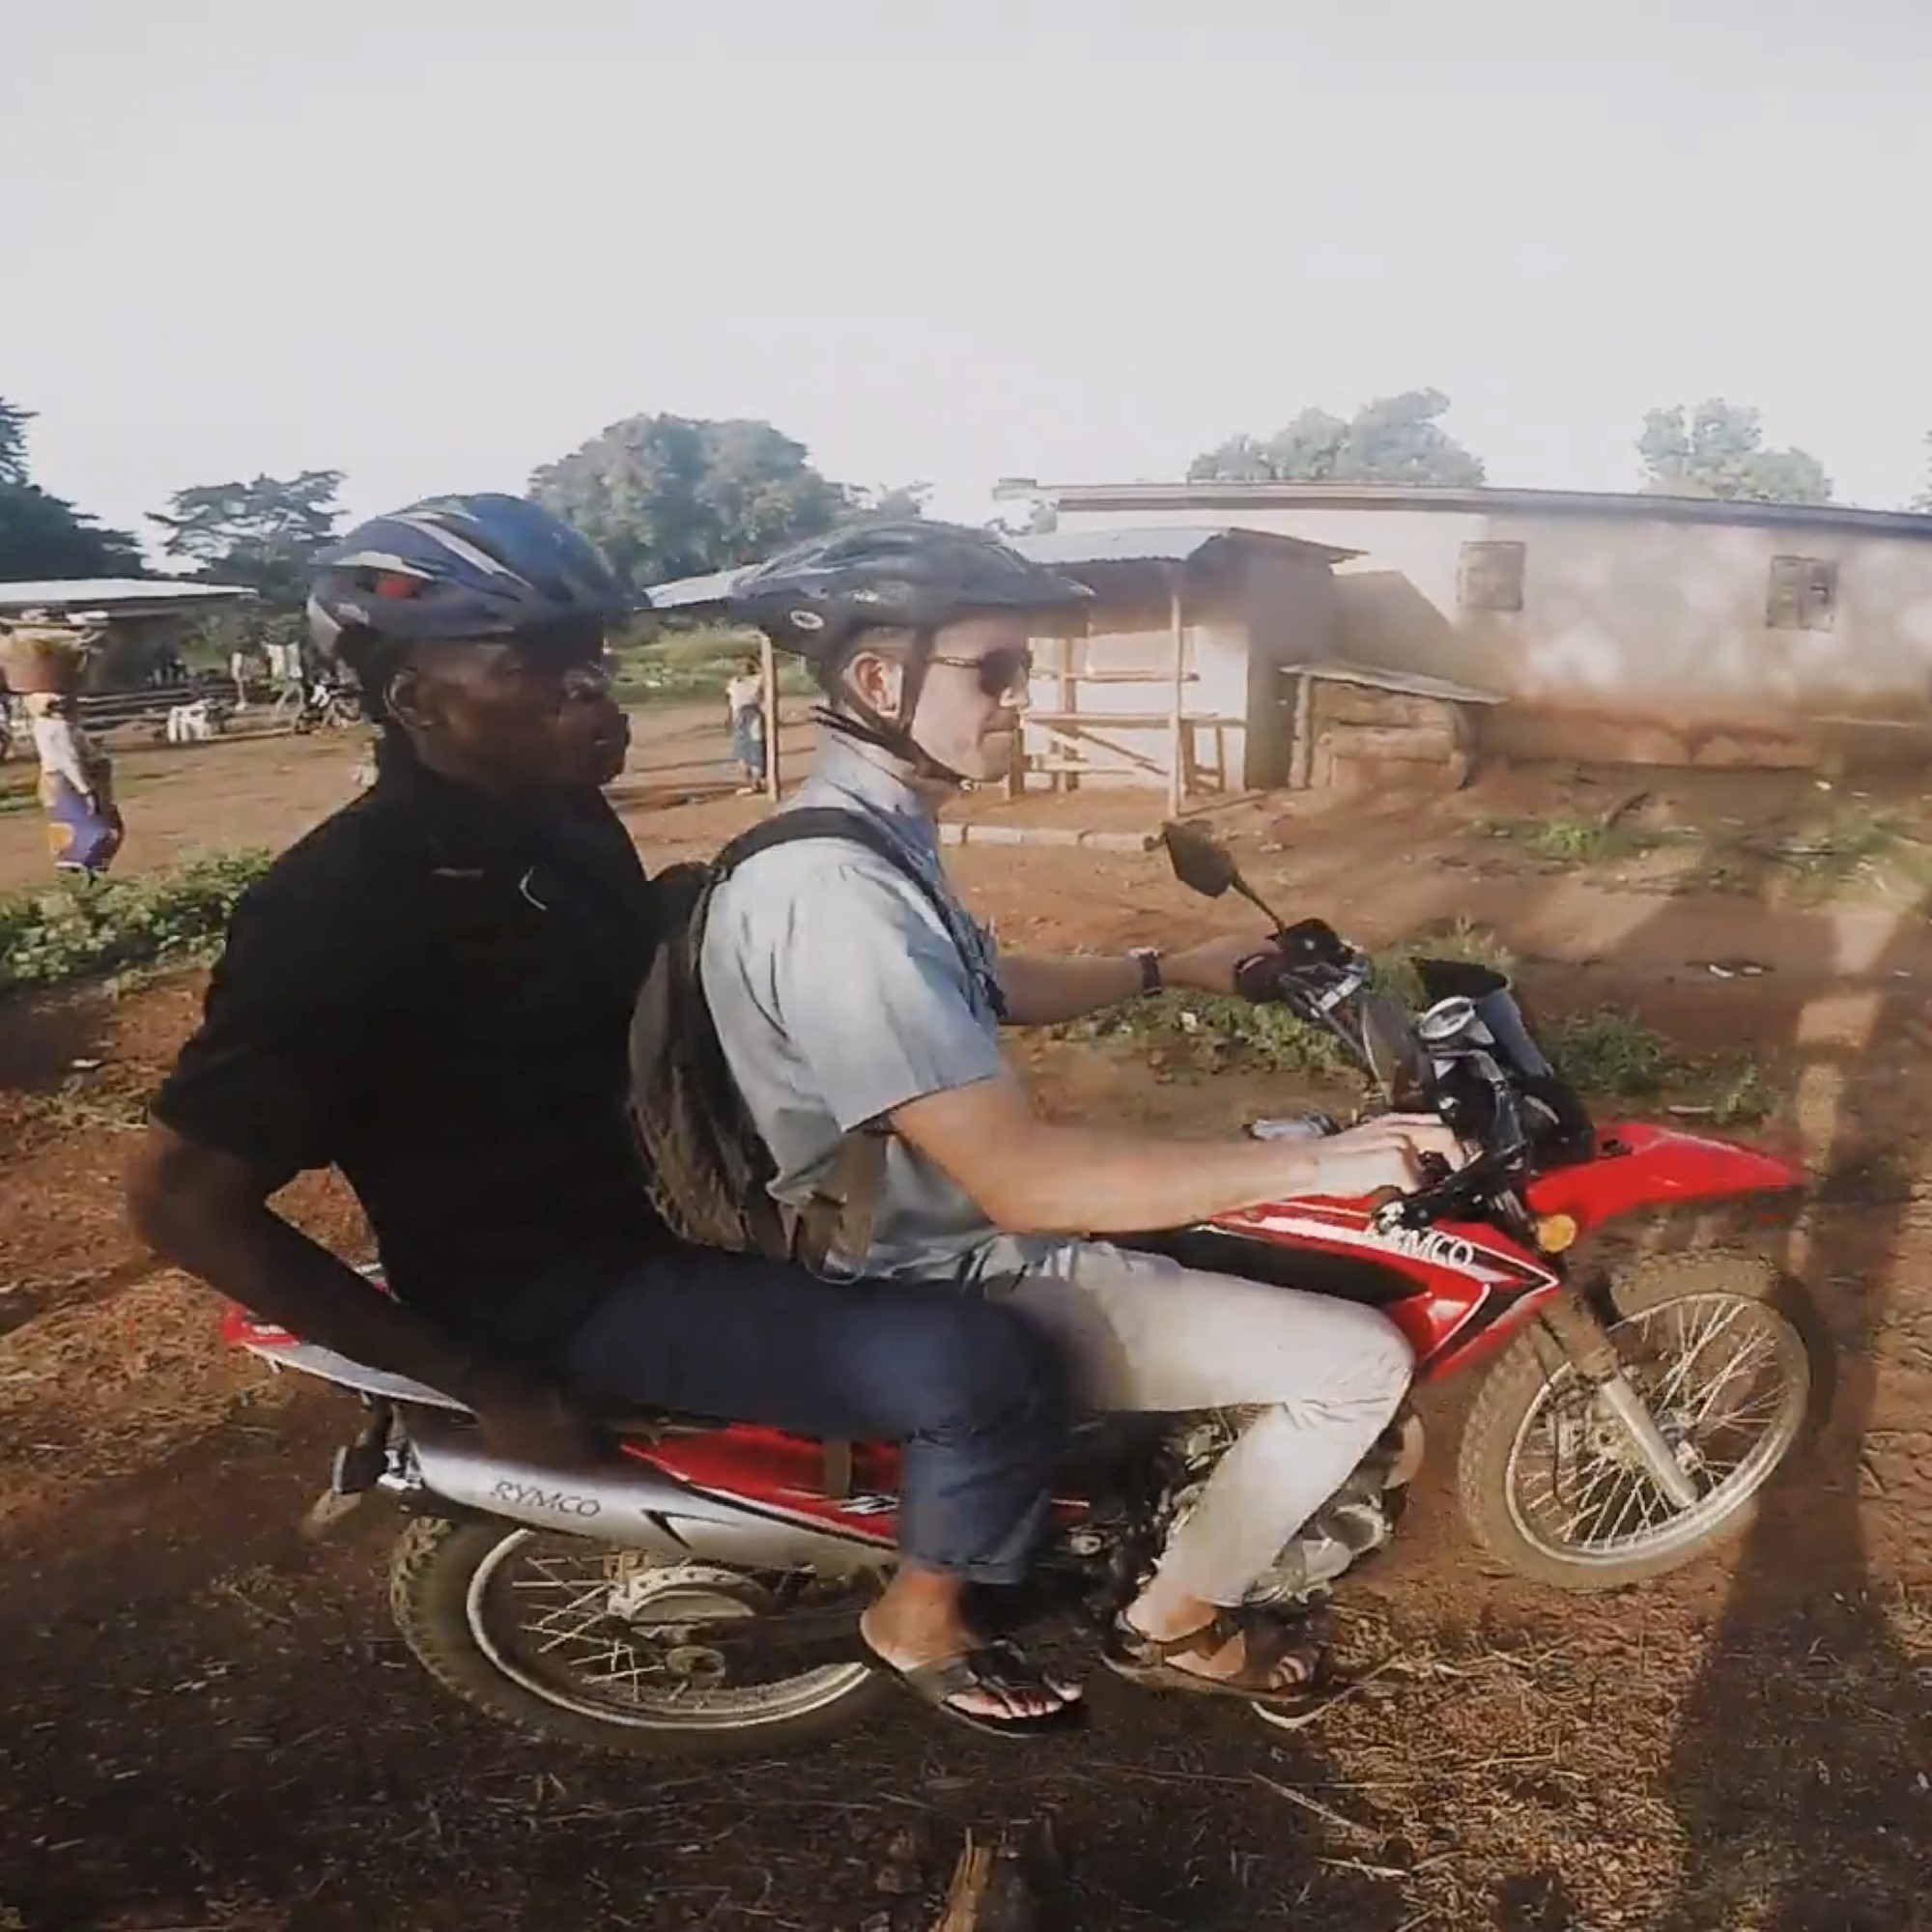 Evangelist og misjonær på motorsykkel